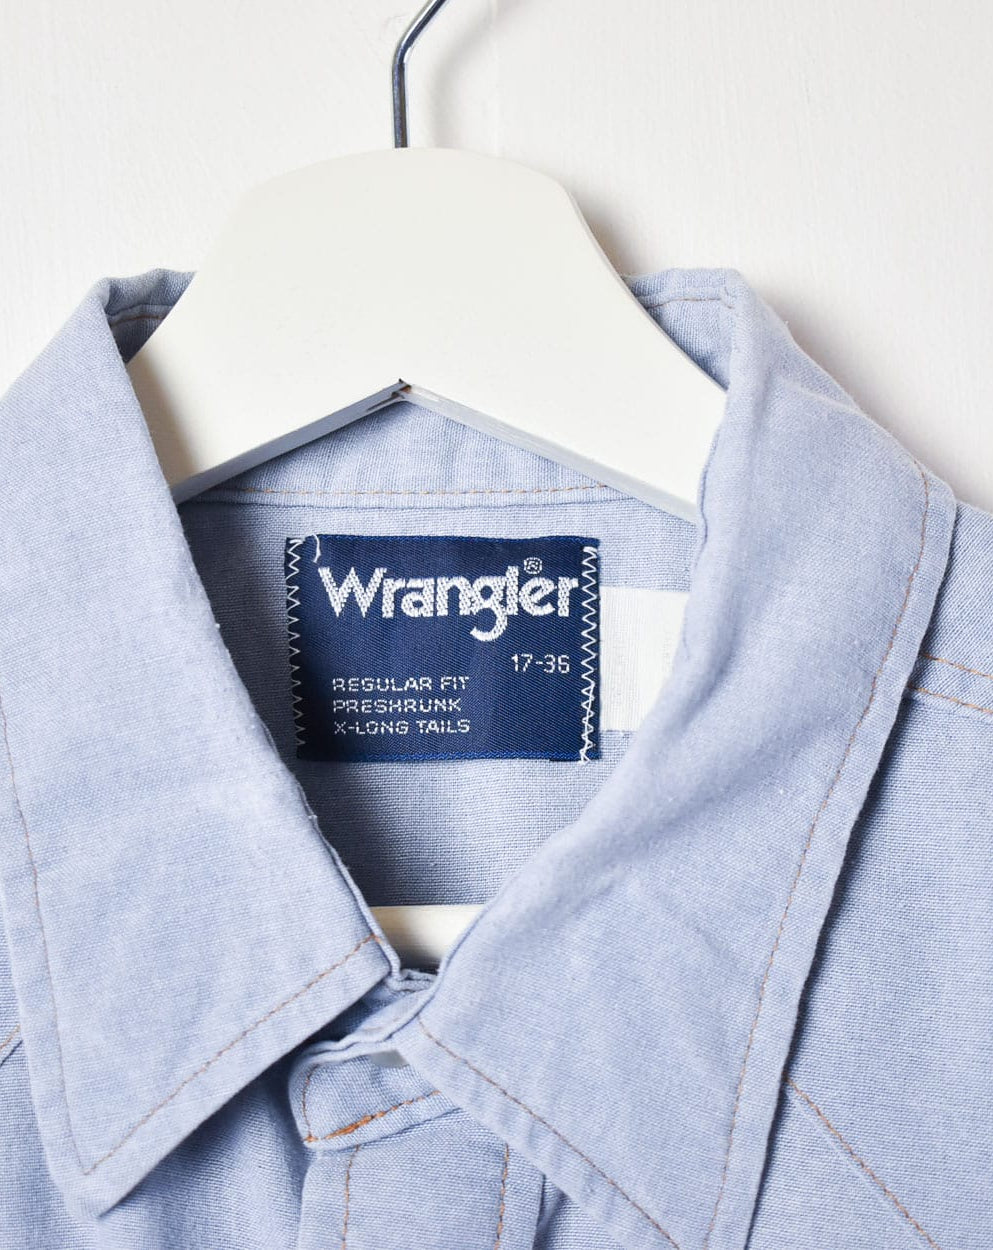 BabyBlue Wrangler Shirt - X-Large